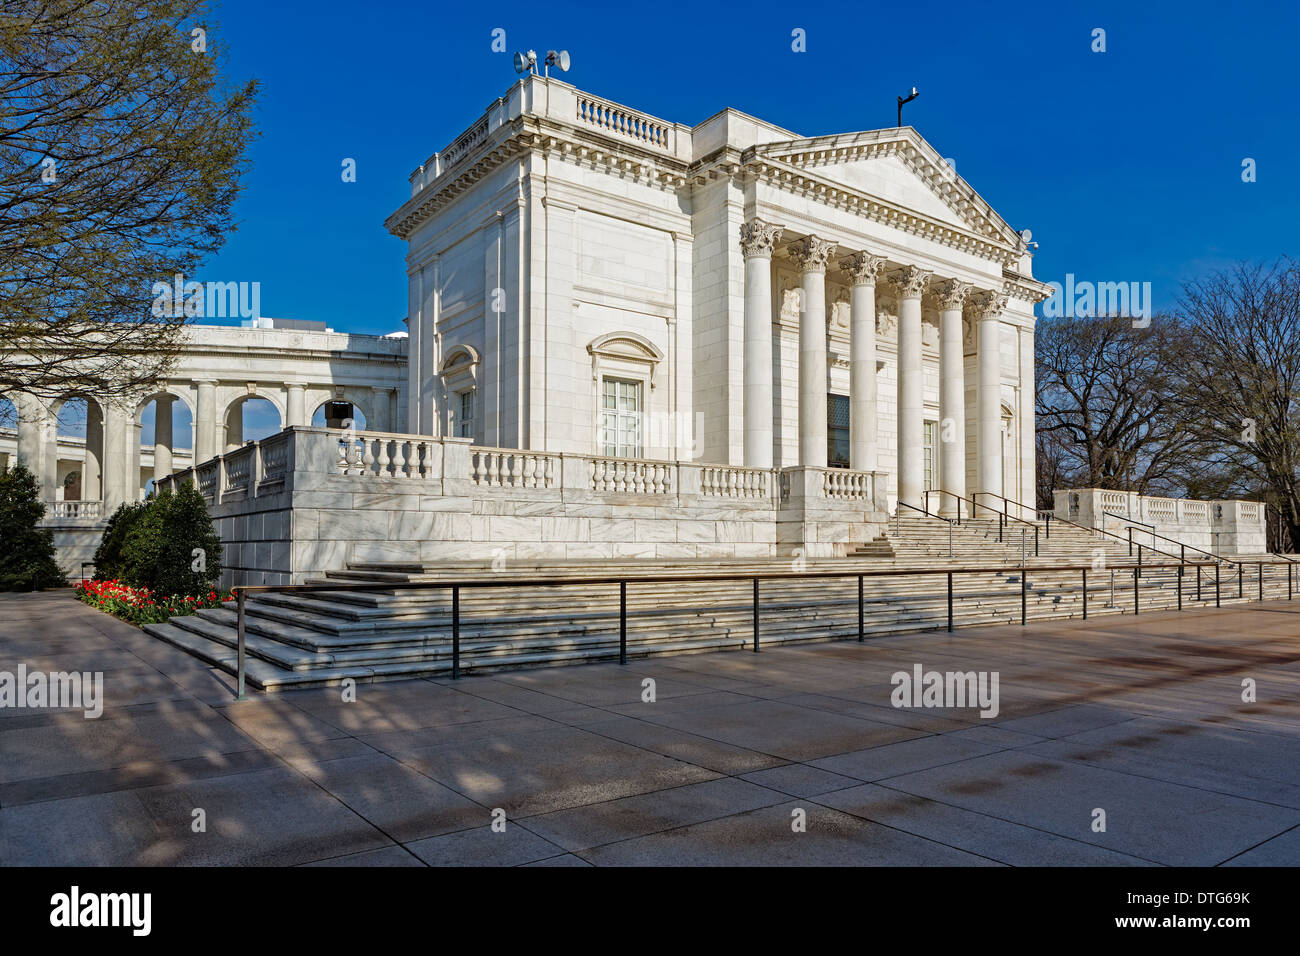 Vue de les détails architecturaux de l'Arlington Memorial Amphitheater au cimetière national d'Arlington en Virginie. L'Amphithéâtre est situé à côté de la tombe de l'inconnu des soldats. Banque D'Images